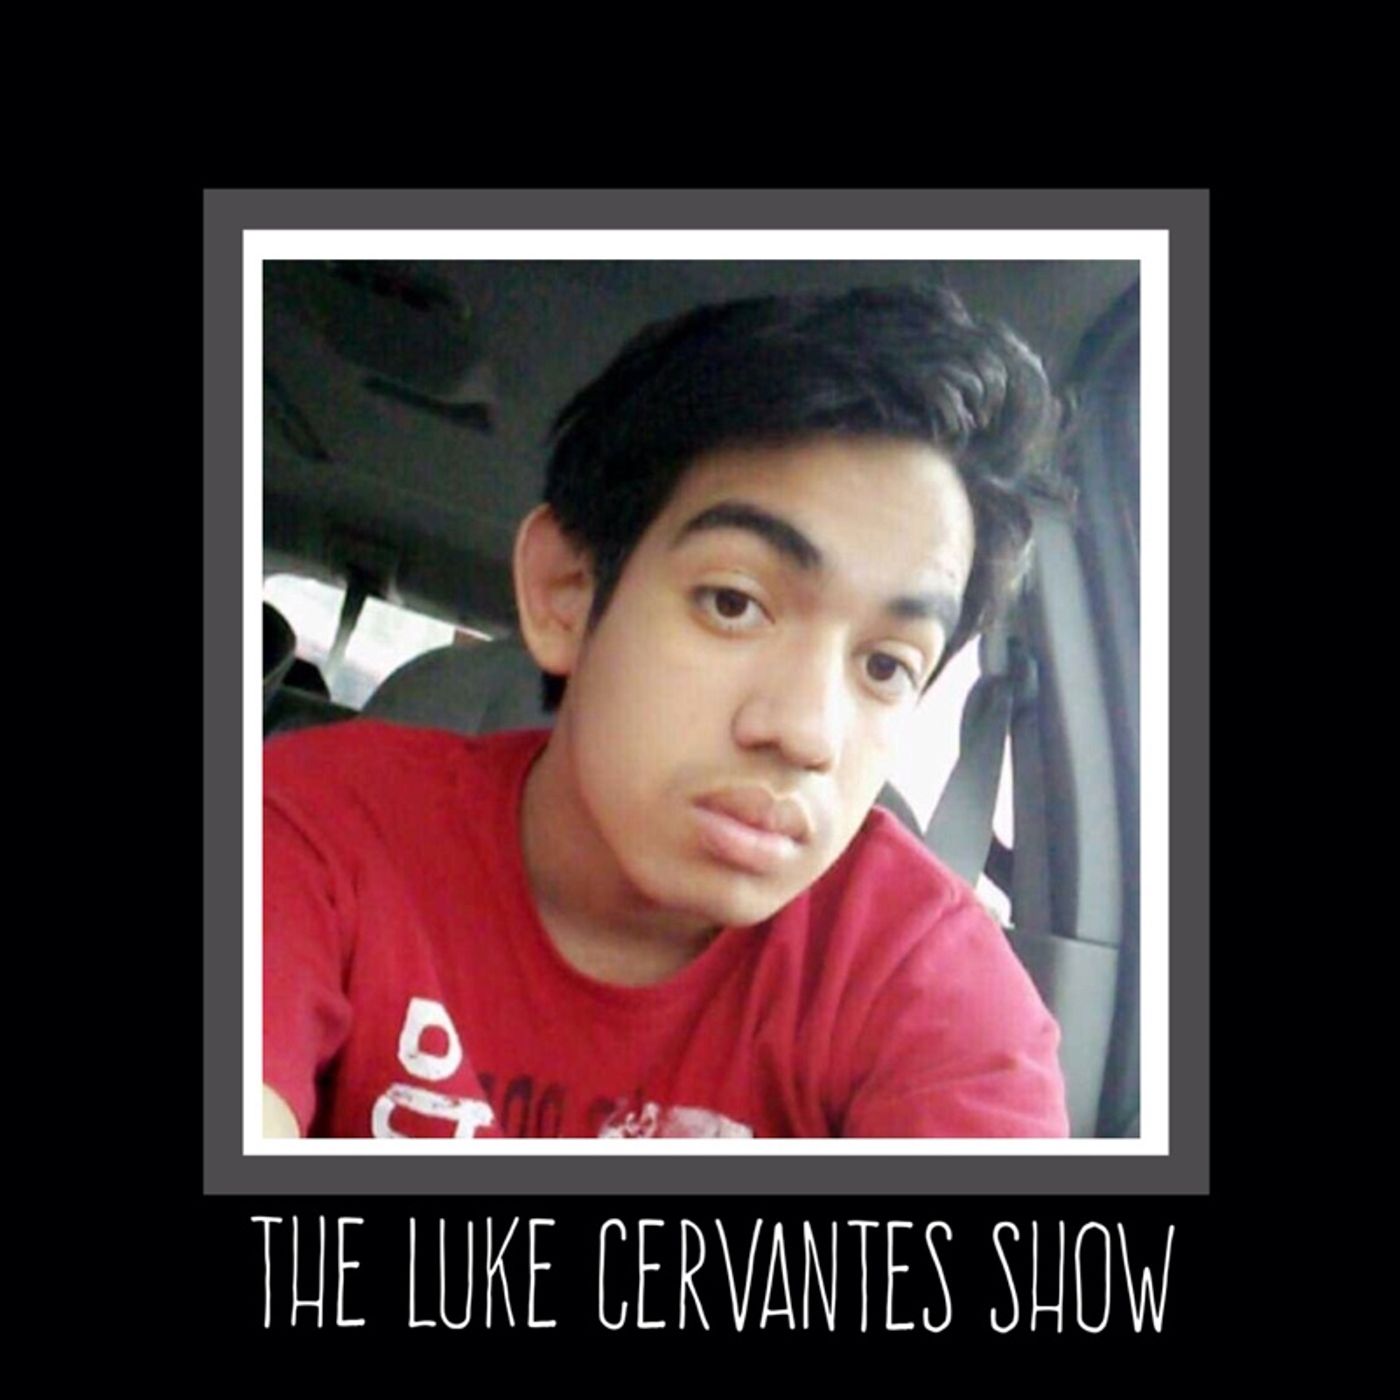 Luke Cervantes's show